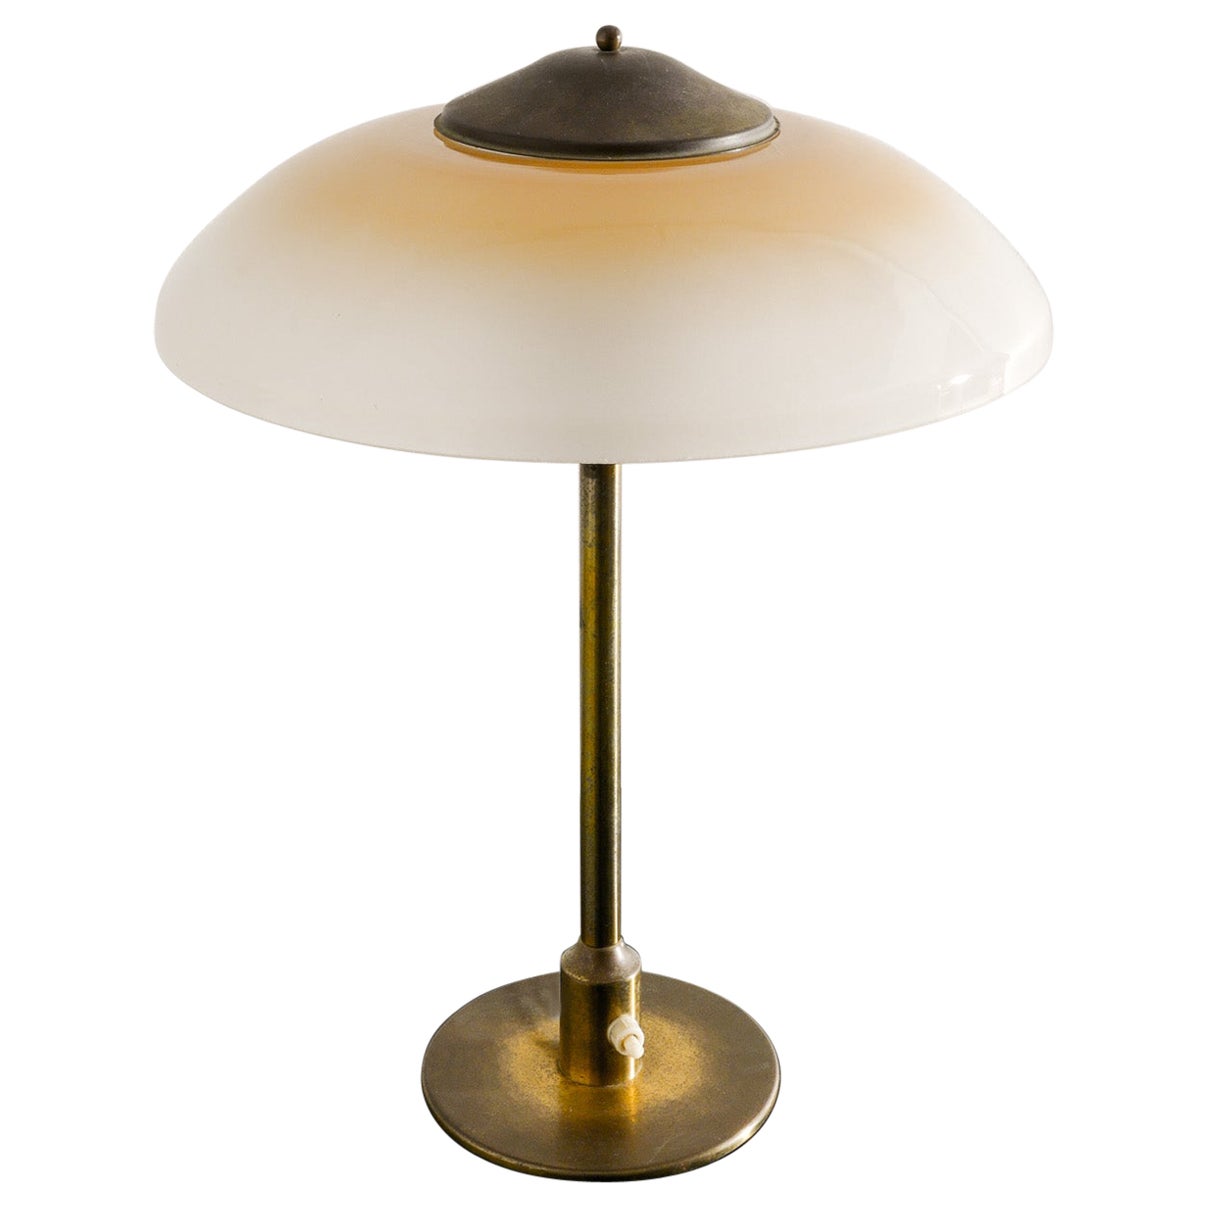 Danish Mid Century Table Desk Lamp in Brass & Glass by Fog & Mørup Denmark 1950s